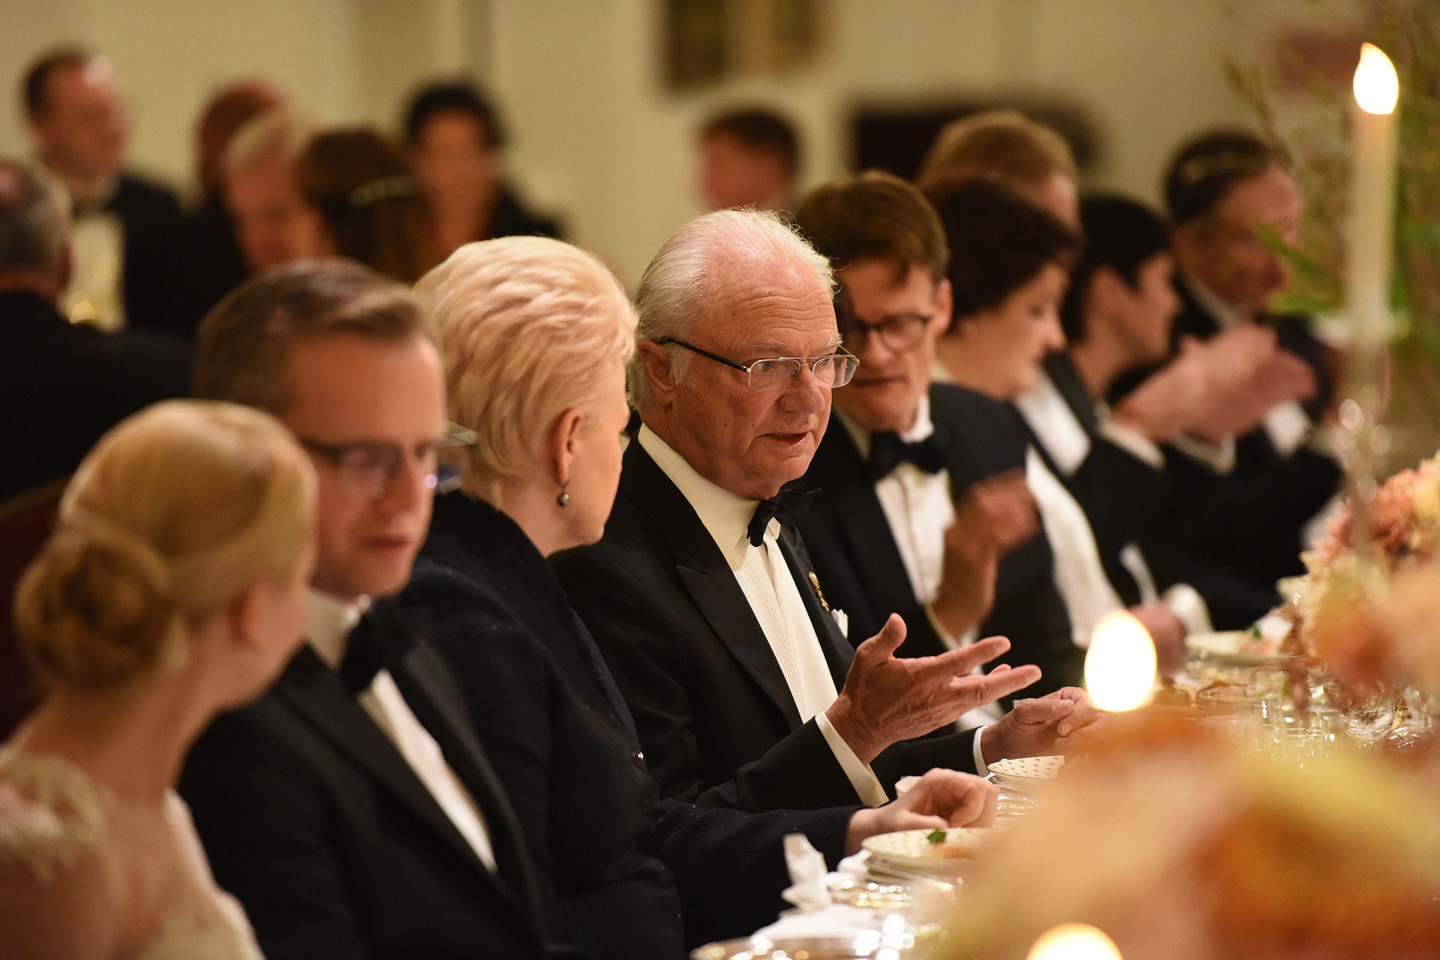 Pagal protokolą sutuoktiniai nesodinami greta vienas kito. Tad per priėmimą Vilniuje karalienė Silvia sėdėjo priešais karalių, kurio dešinėje buvo pasodinta prezidentė D.Grybauskaitė.<br>Švedijos karališkųjų rūmų nuotr.